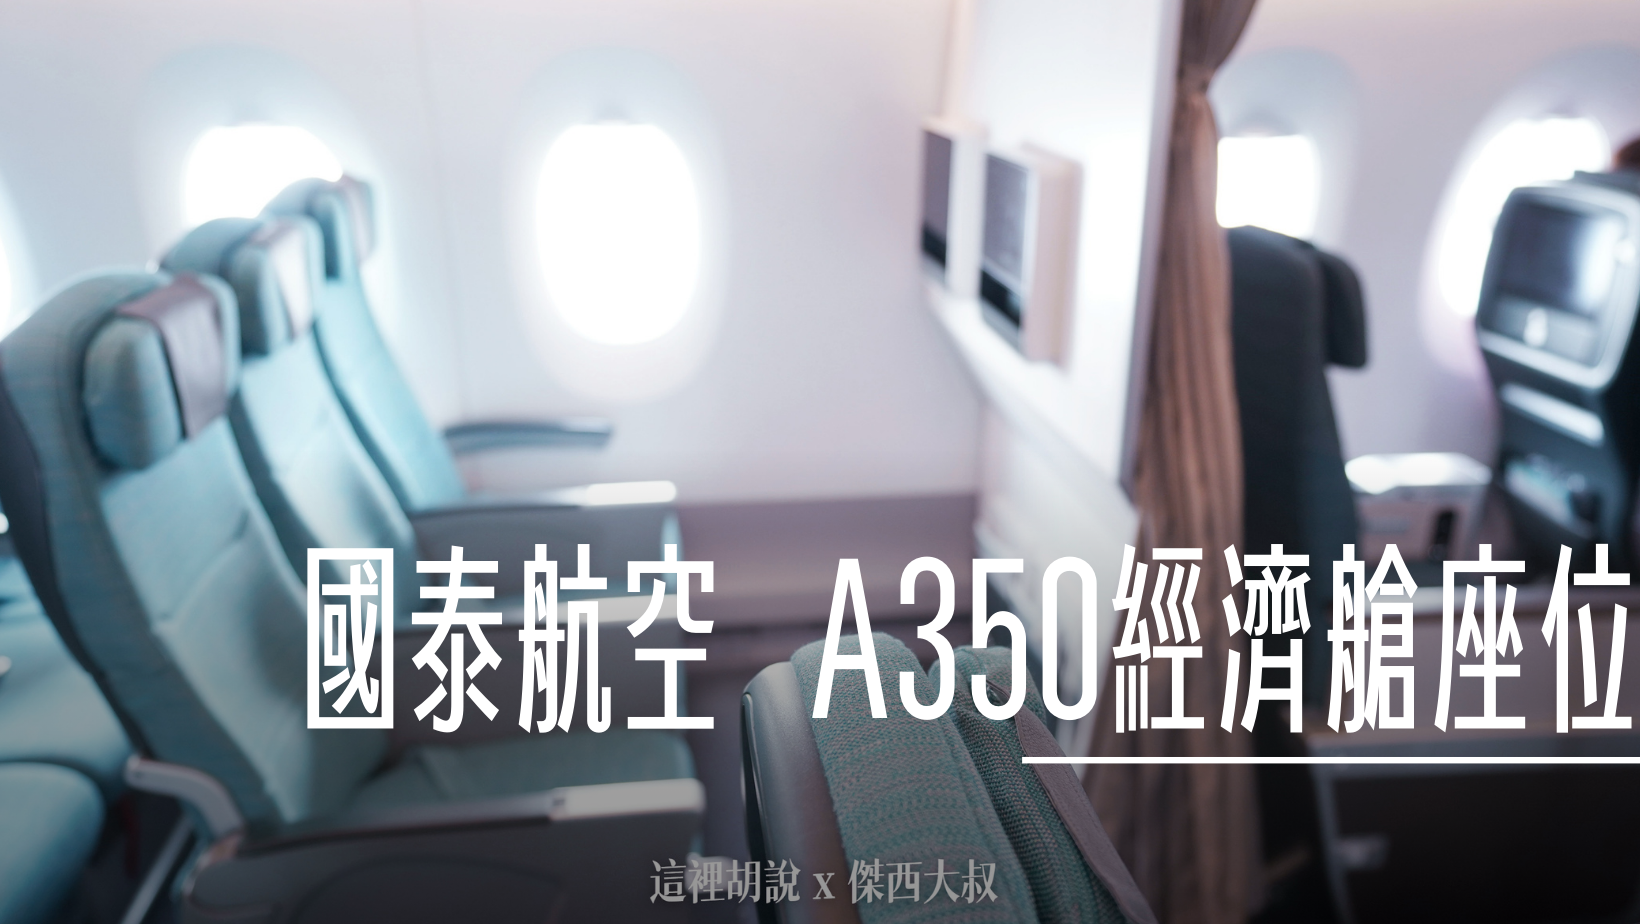 國泰航空 A330-300 經濟艙照片記錄 (33P)